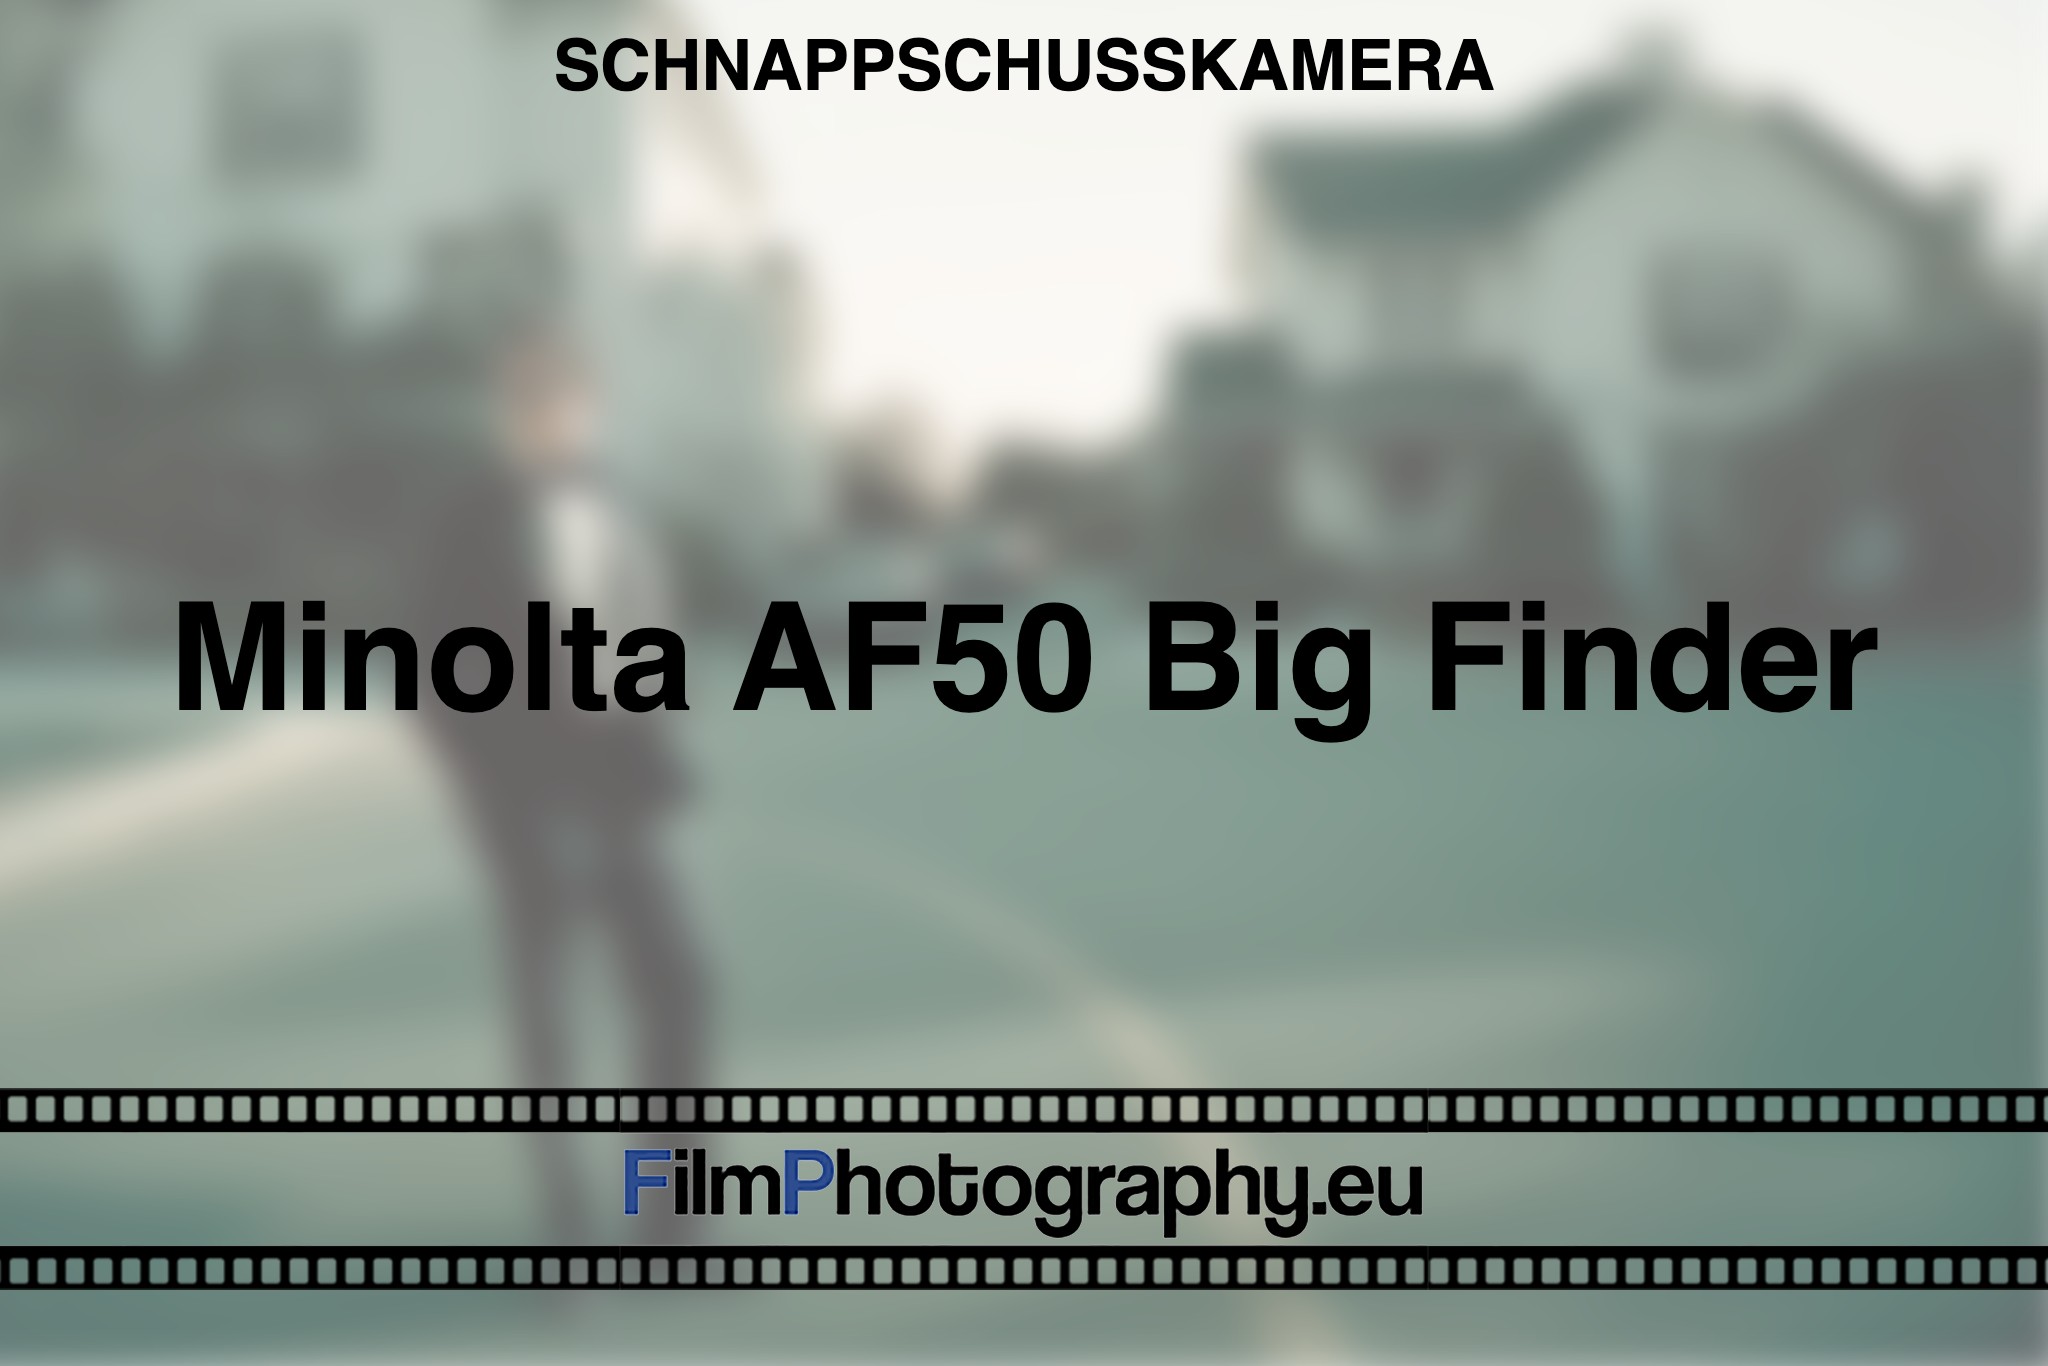 minolta-af50-big-finder-schnappschusskamera-bnv